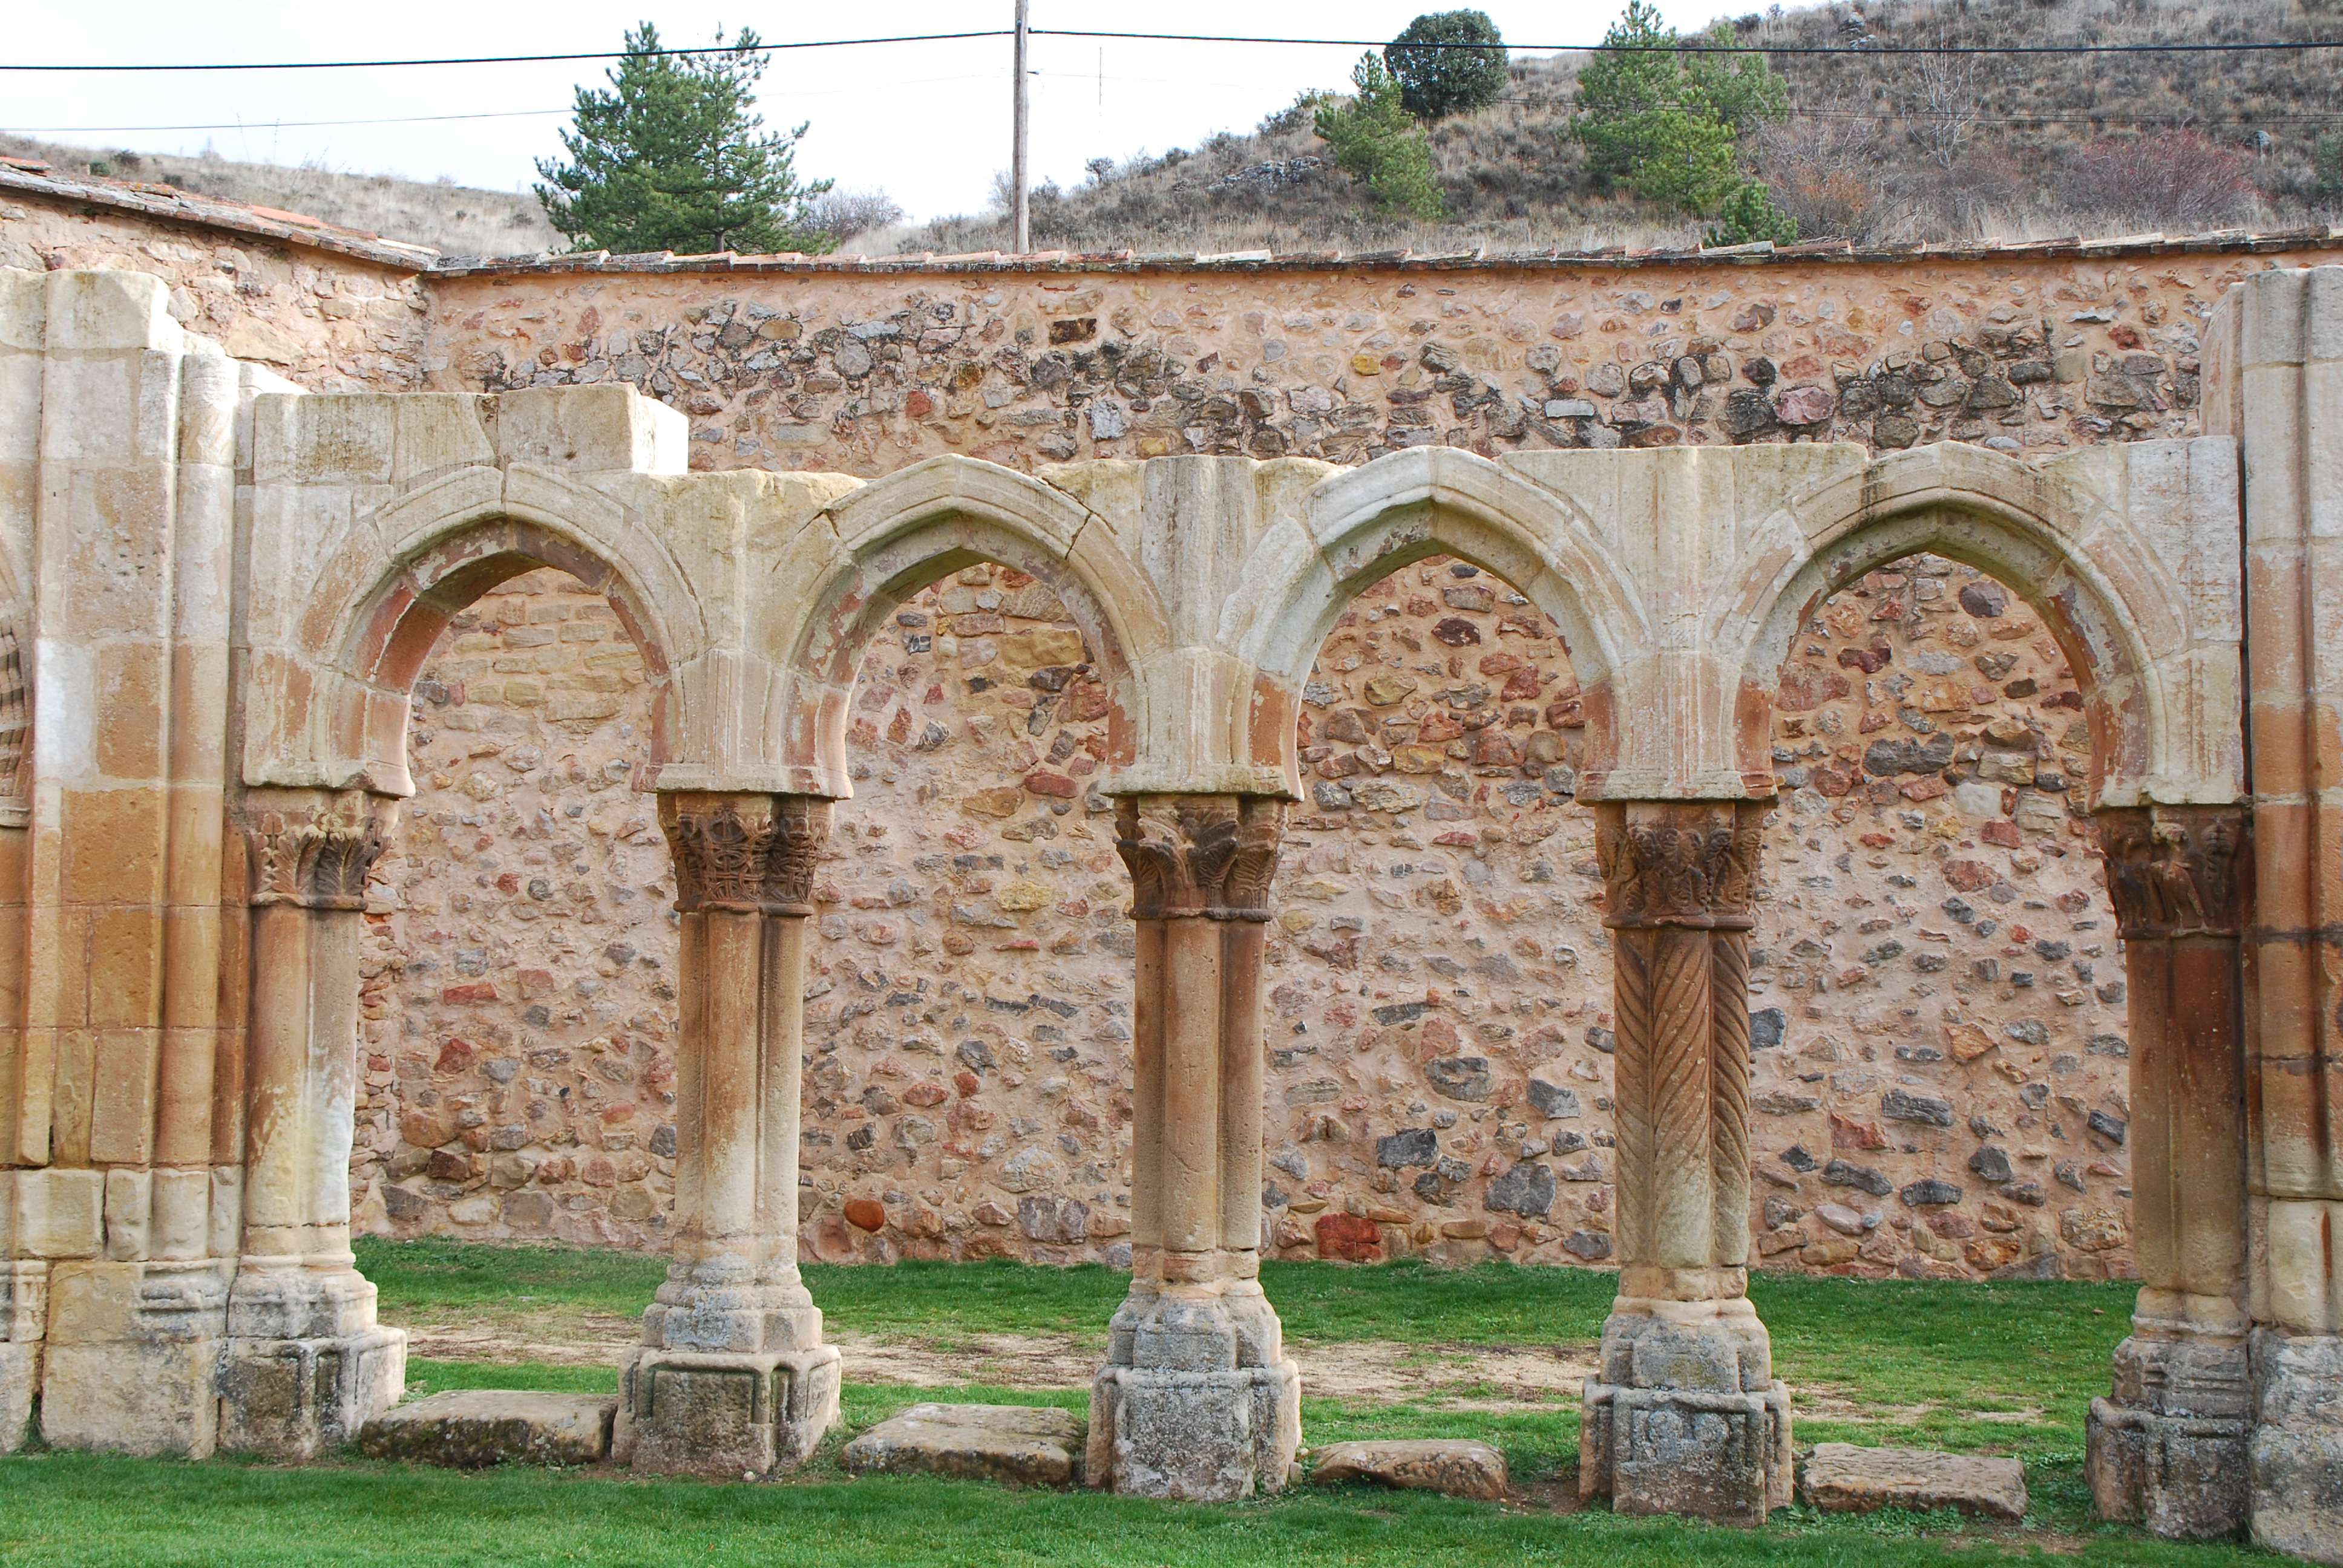 Monasterio de San Juan de Duero. Un enigma - Blogs of Spain - Monasterio de San Juan de Duero (8)